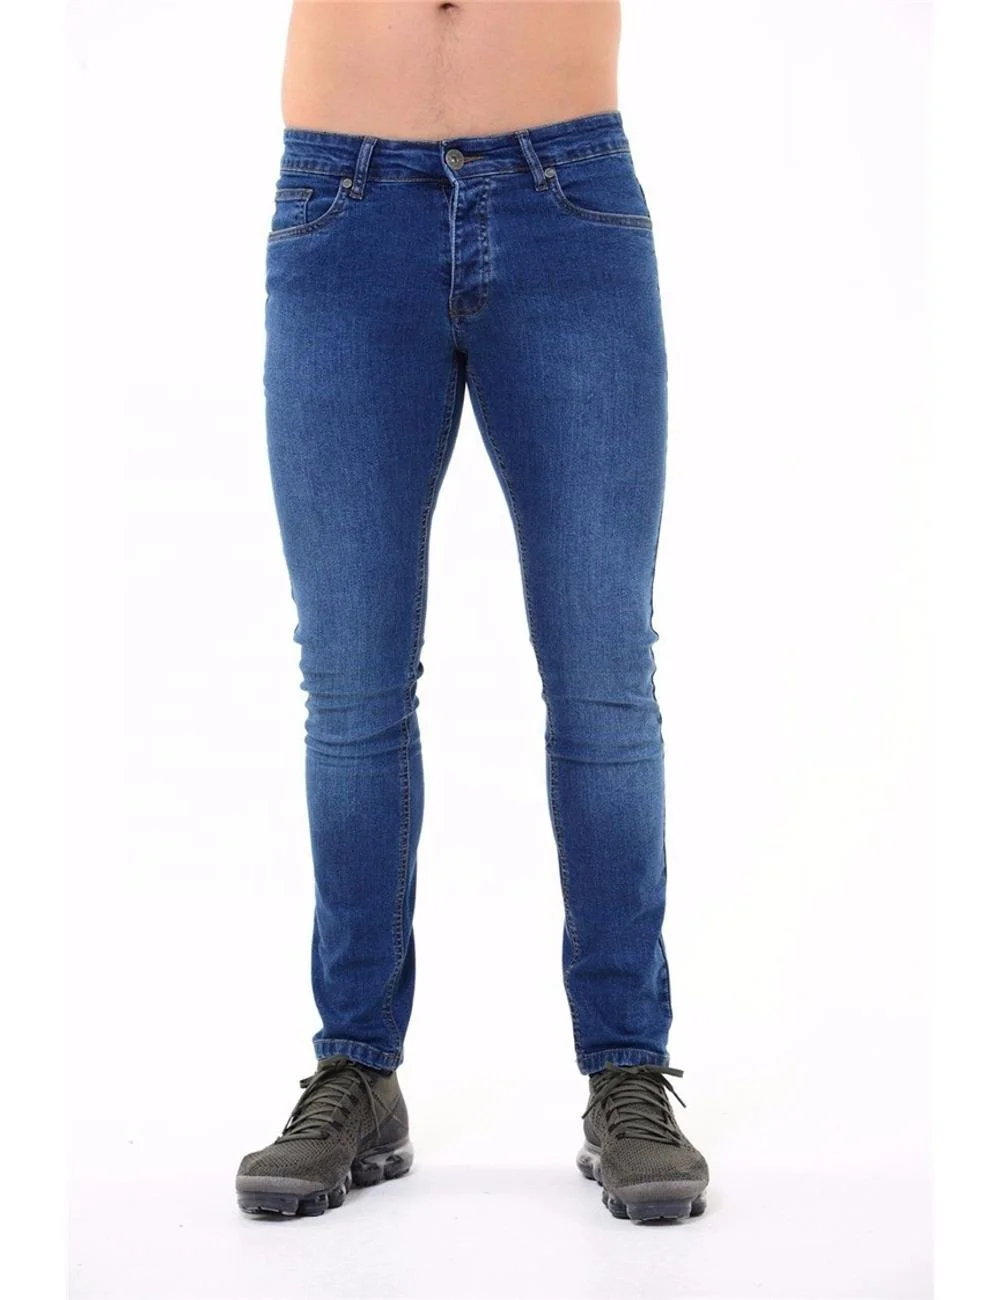 FALSCH Viel schönes gut Waren mannen skinny jeans bitte beachten Sie ...